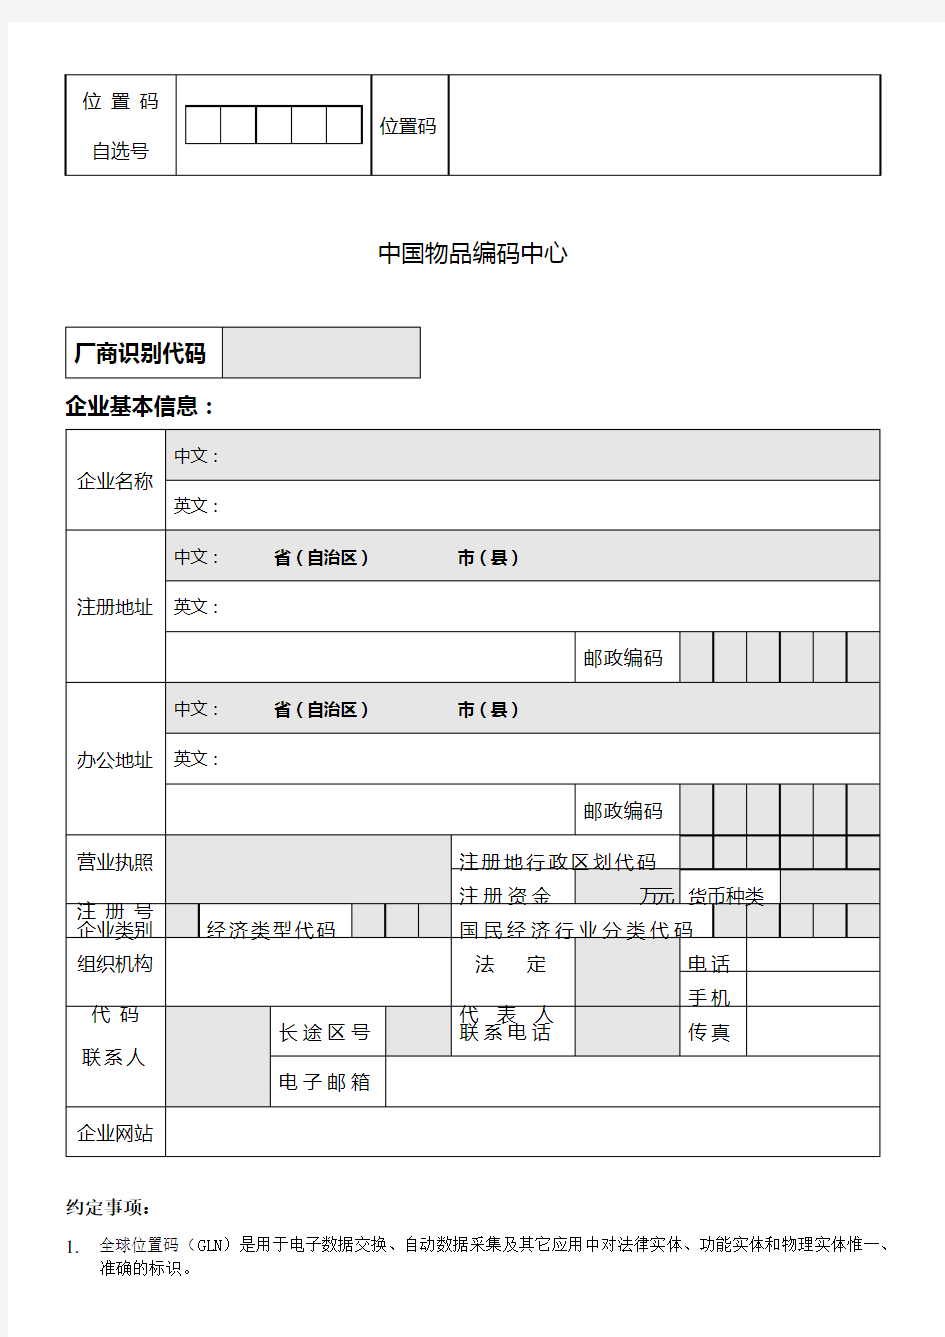 中国商品条码系统成员位置码注册登记表_-_中国物品编码中心